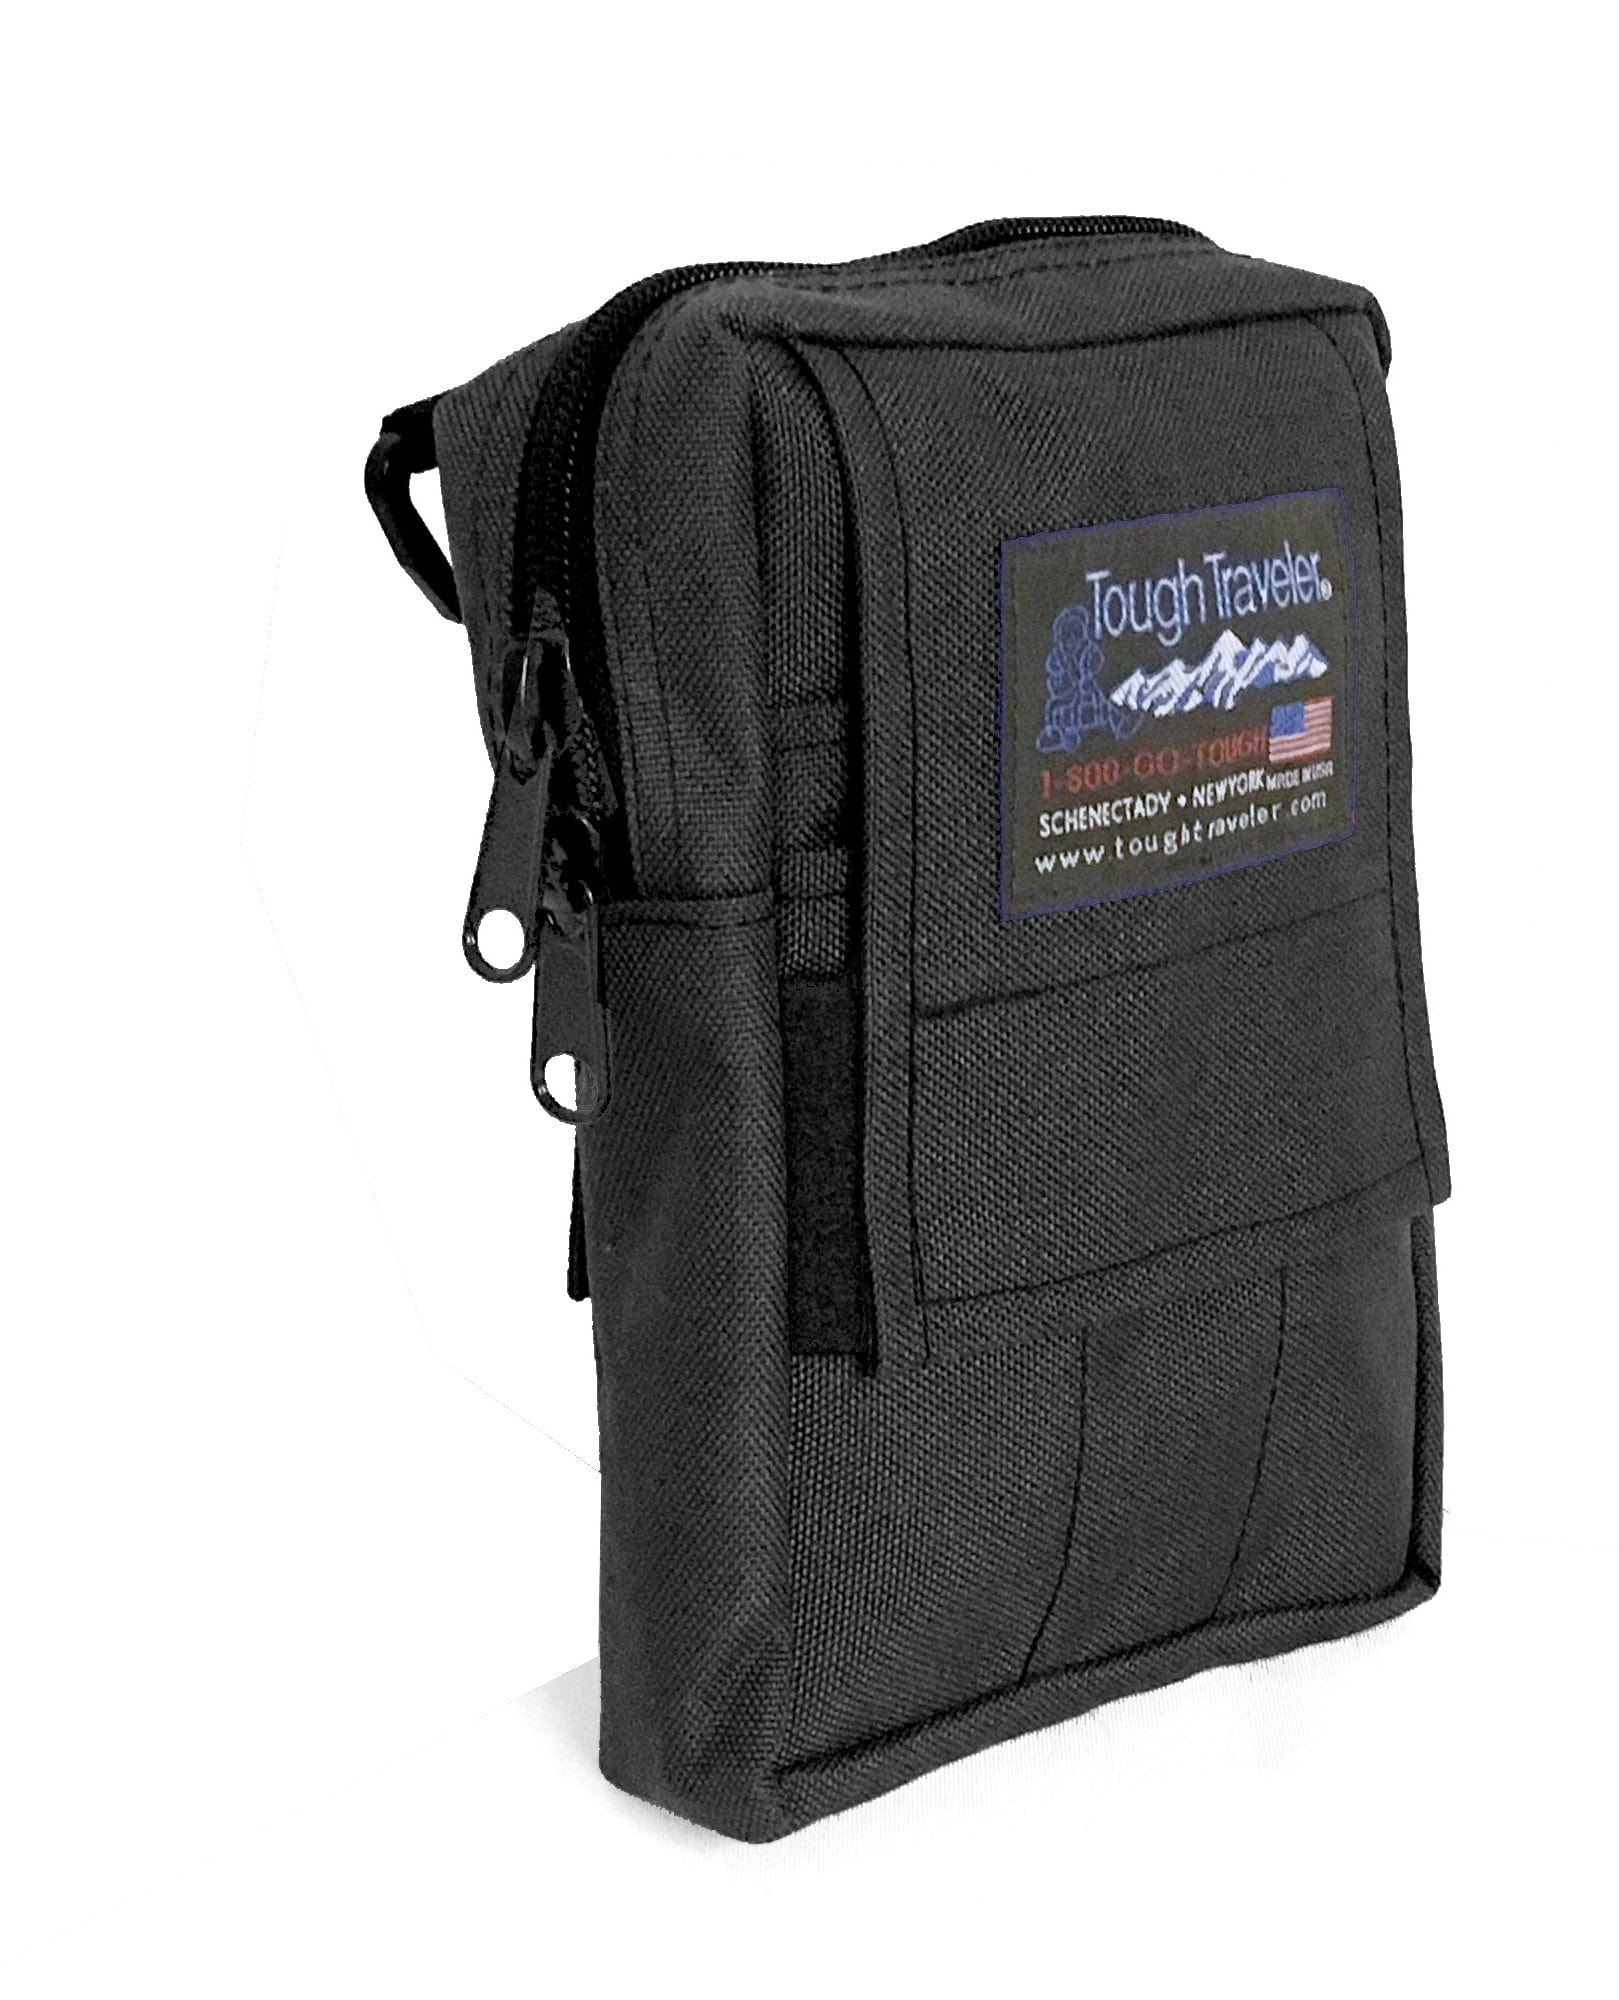 Men's Sports Utility Messenger Bag Large Capacity Single Shoulder Crossbody  Bag Shoulder Bag Sling Bag Side Bag For Travel Commute Business Holiday  Essentials Lightweight Carry On For University College Students Square Bags